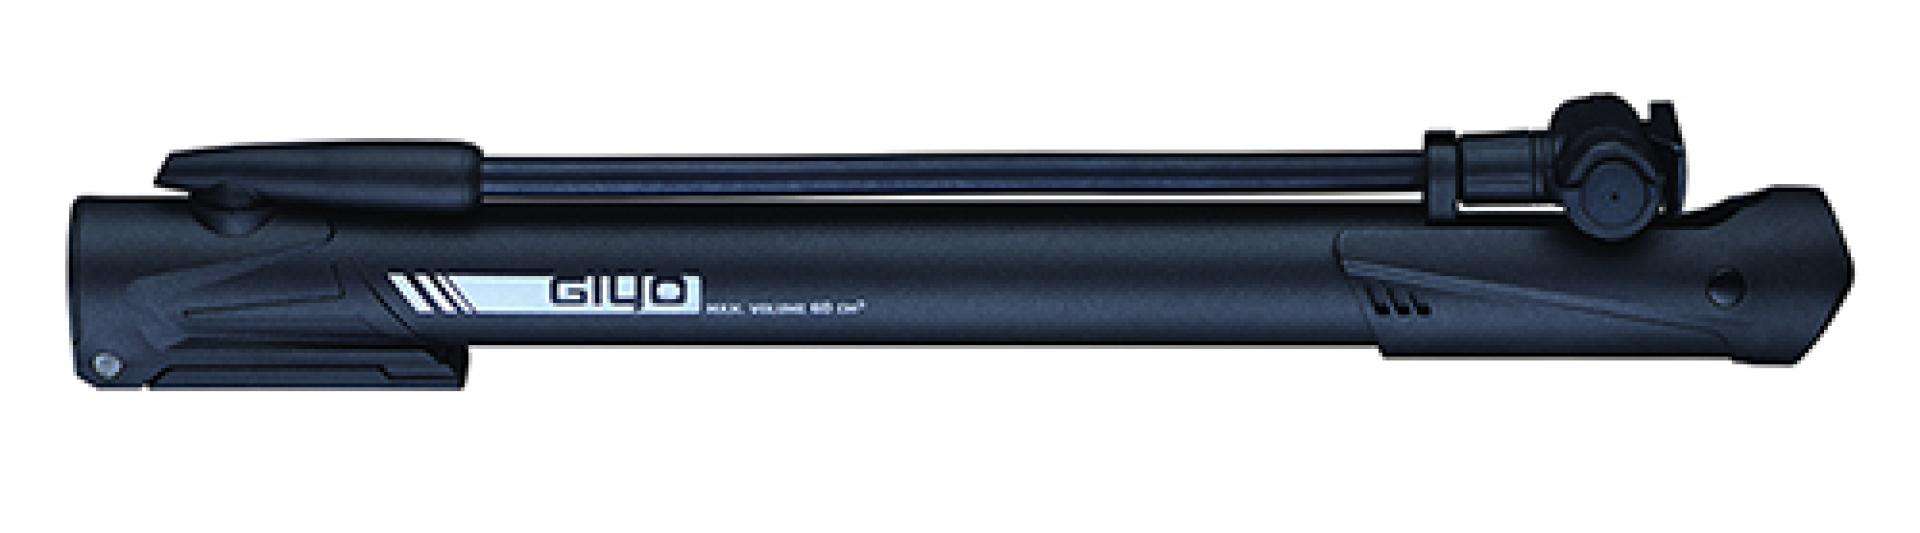 Насос Giyo GM-64P, ножной упор, Т-ручка, пластик